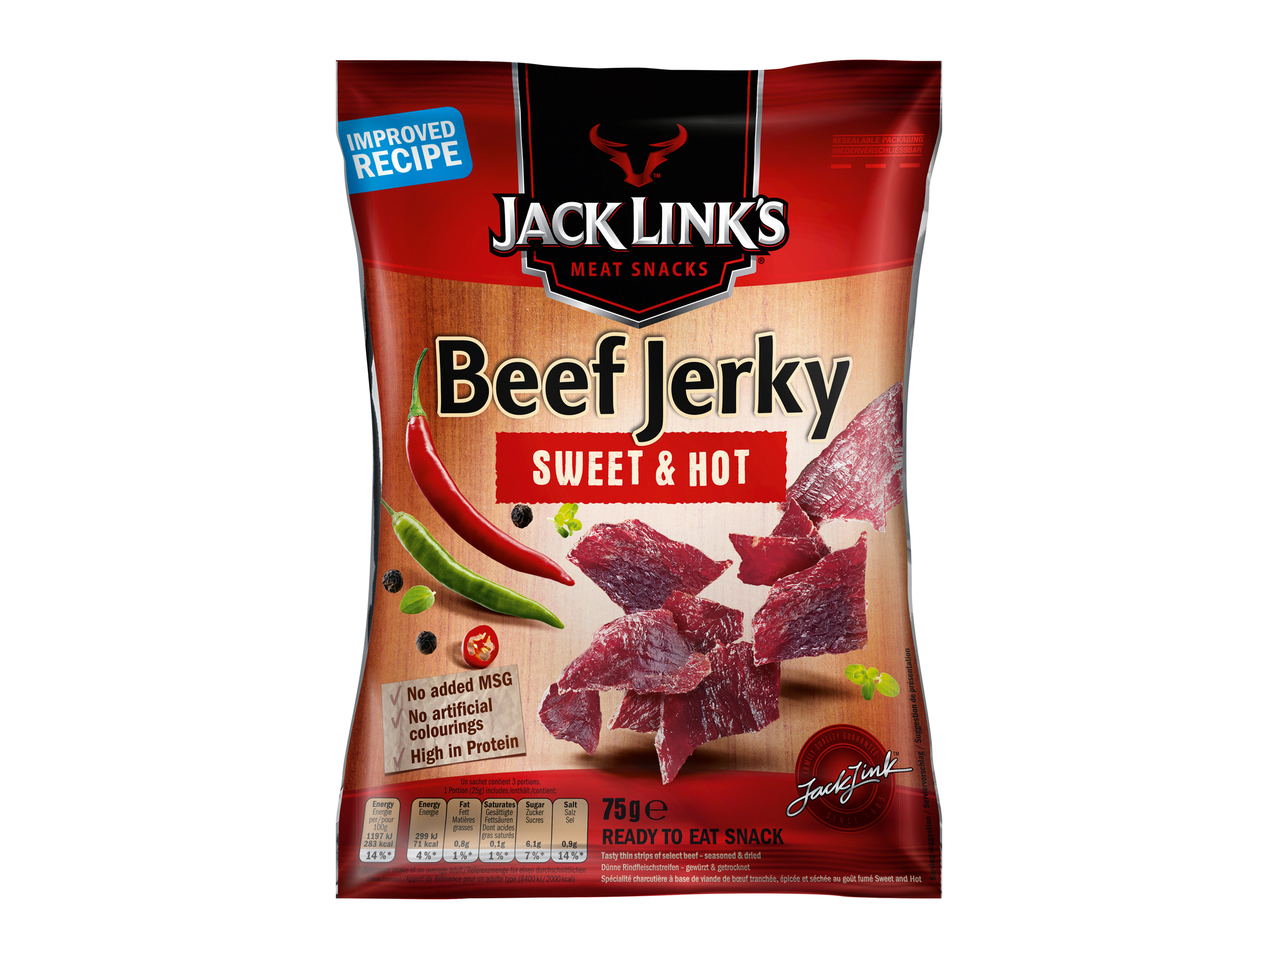 Beef Jerky Sweet & Hot Jack Link's